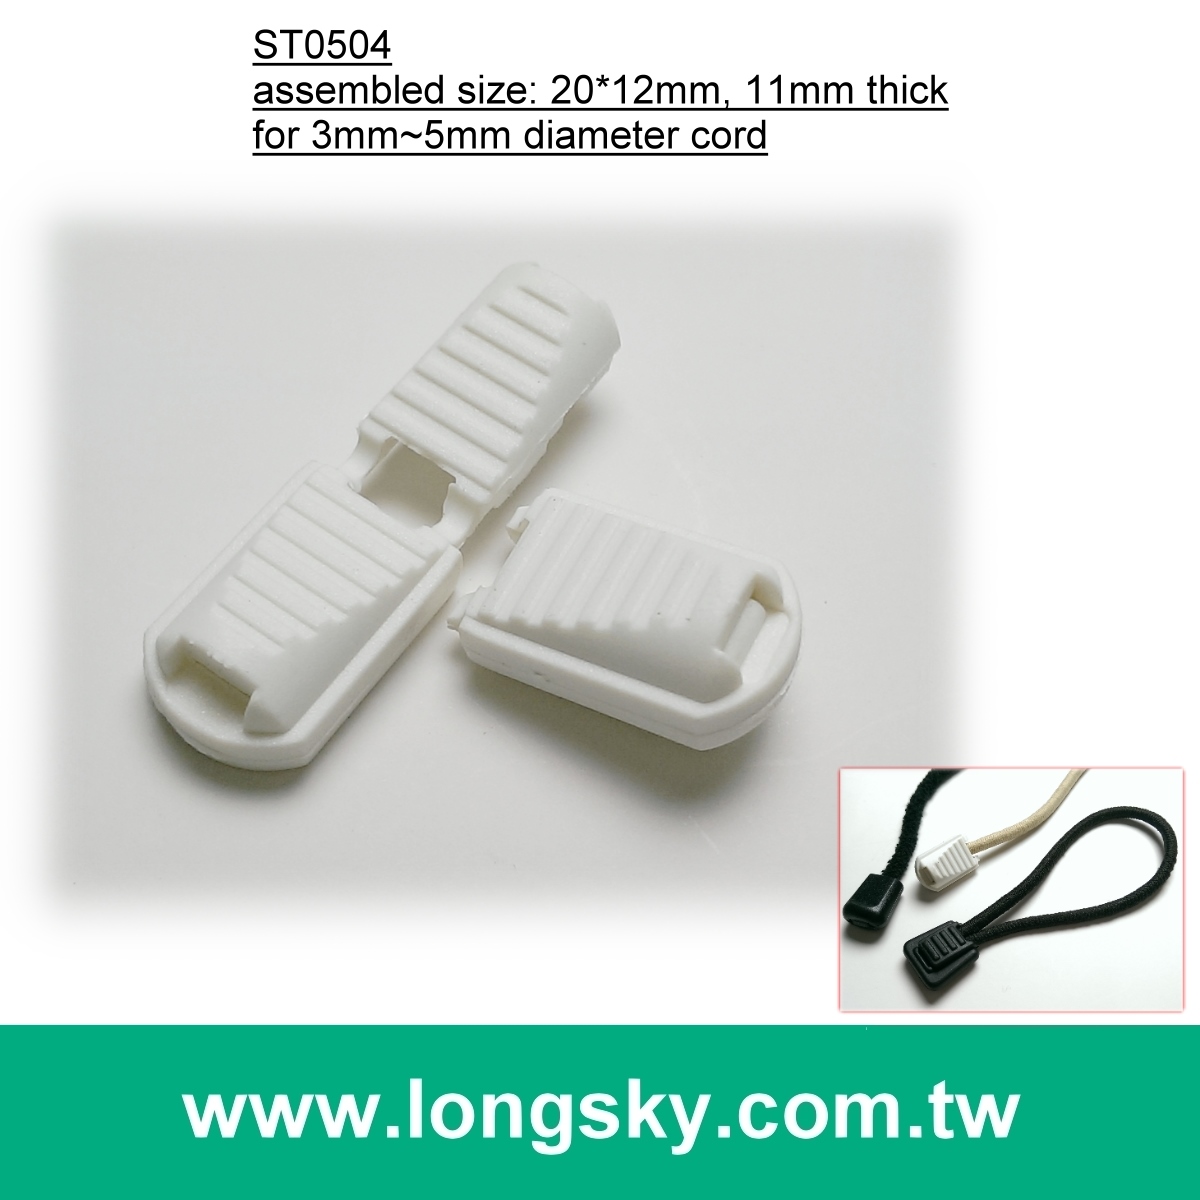 (#ST0504) 白色塑膠尼龍繩尾扣, 拉鍊用穿繩拉頭